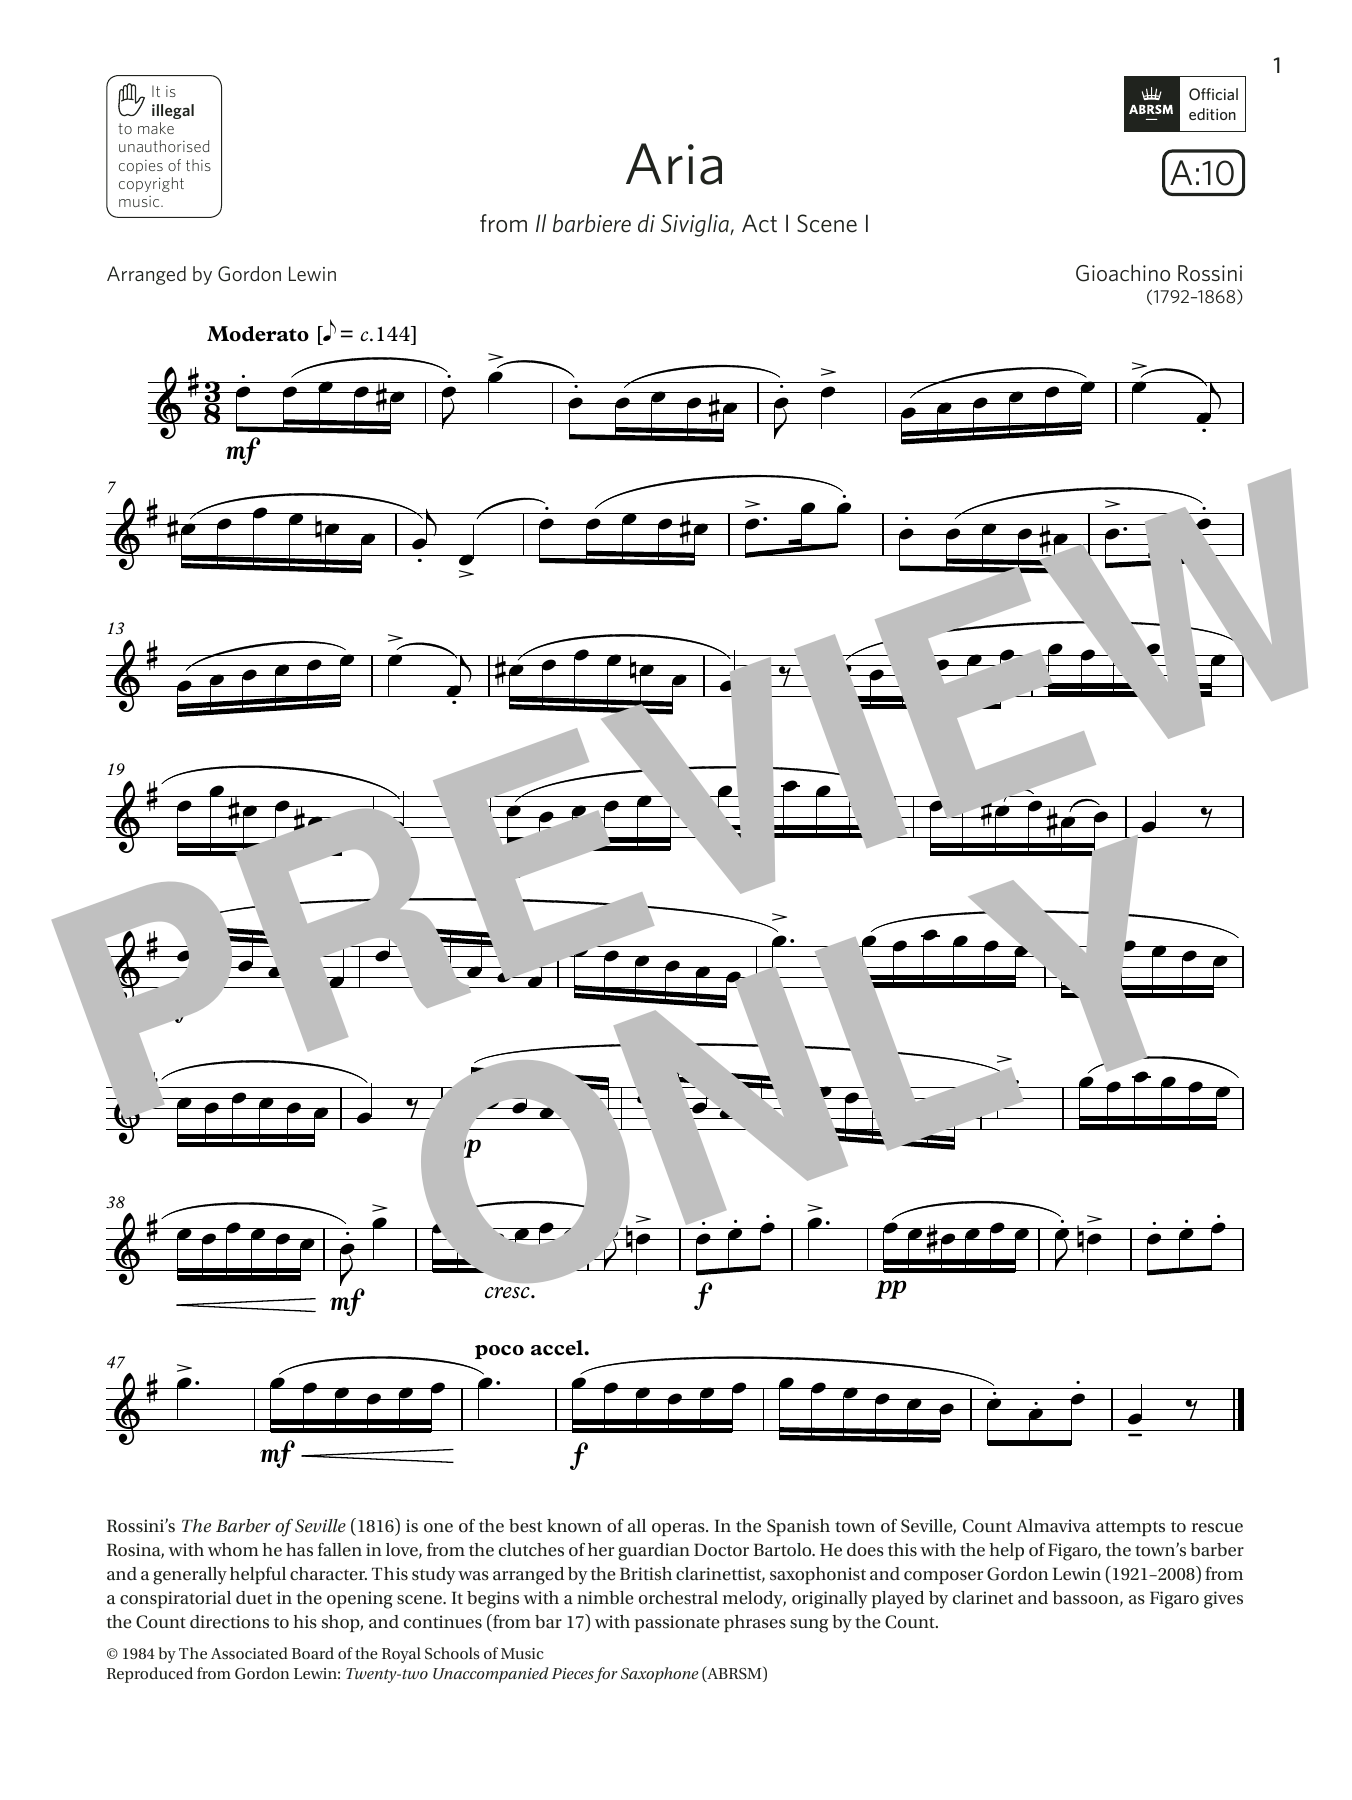 Download Rossini Aria (from Il barbiere di Siviglia) (G Sheet Music